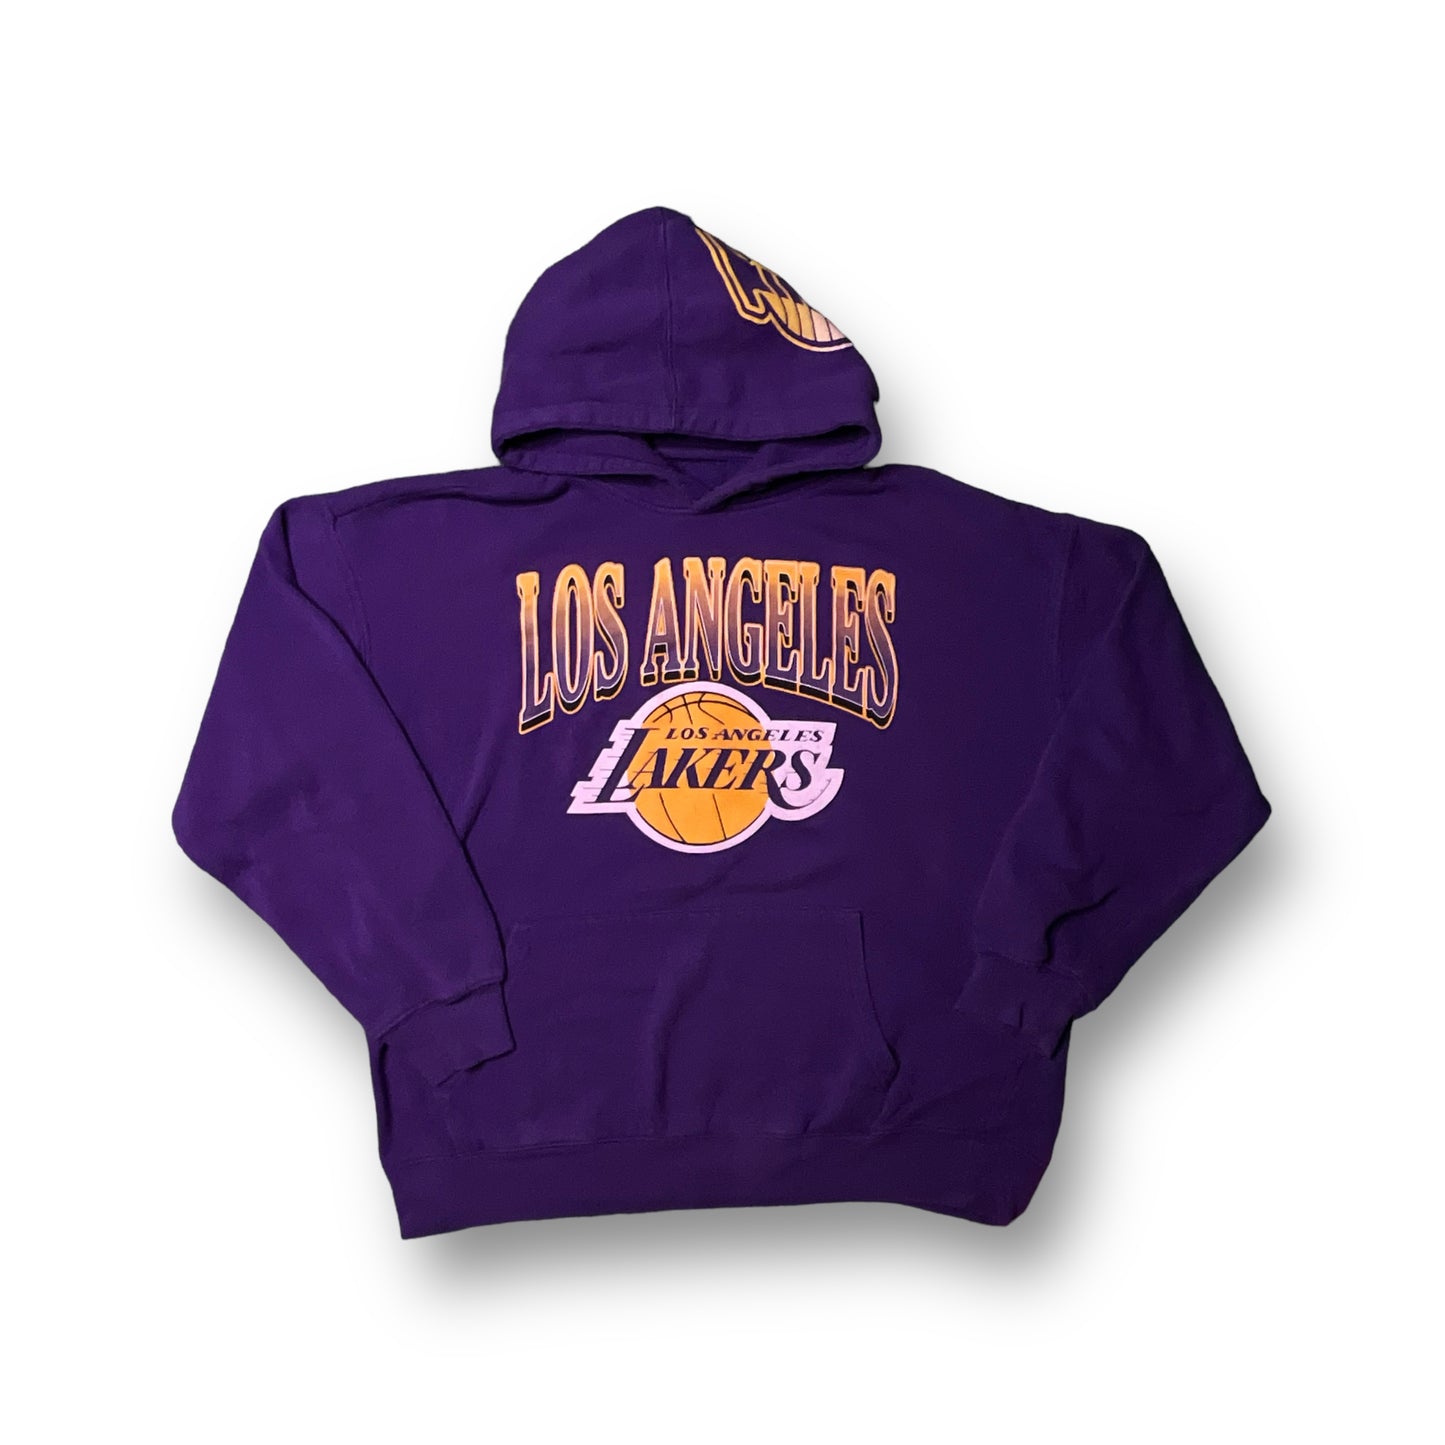 2009 Los Angeles Lakers Hoodie (L)